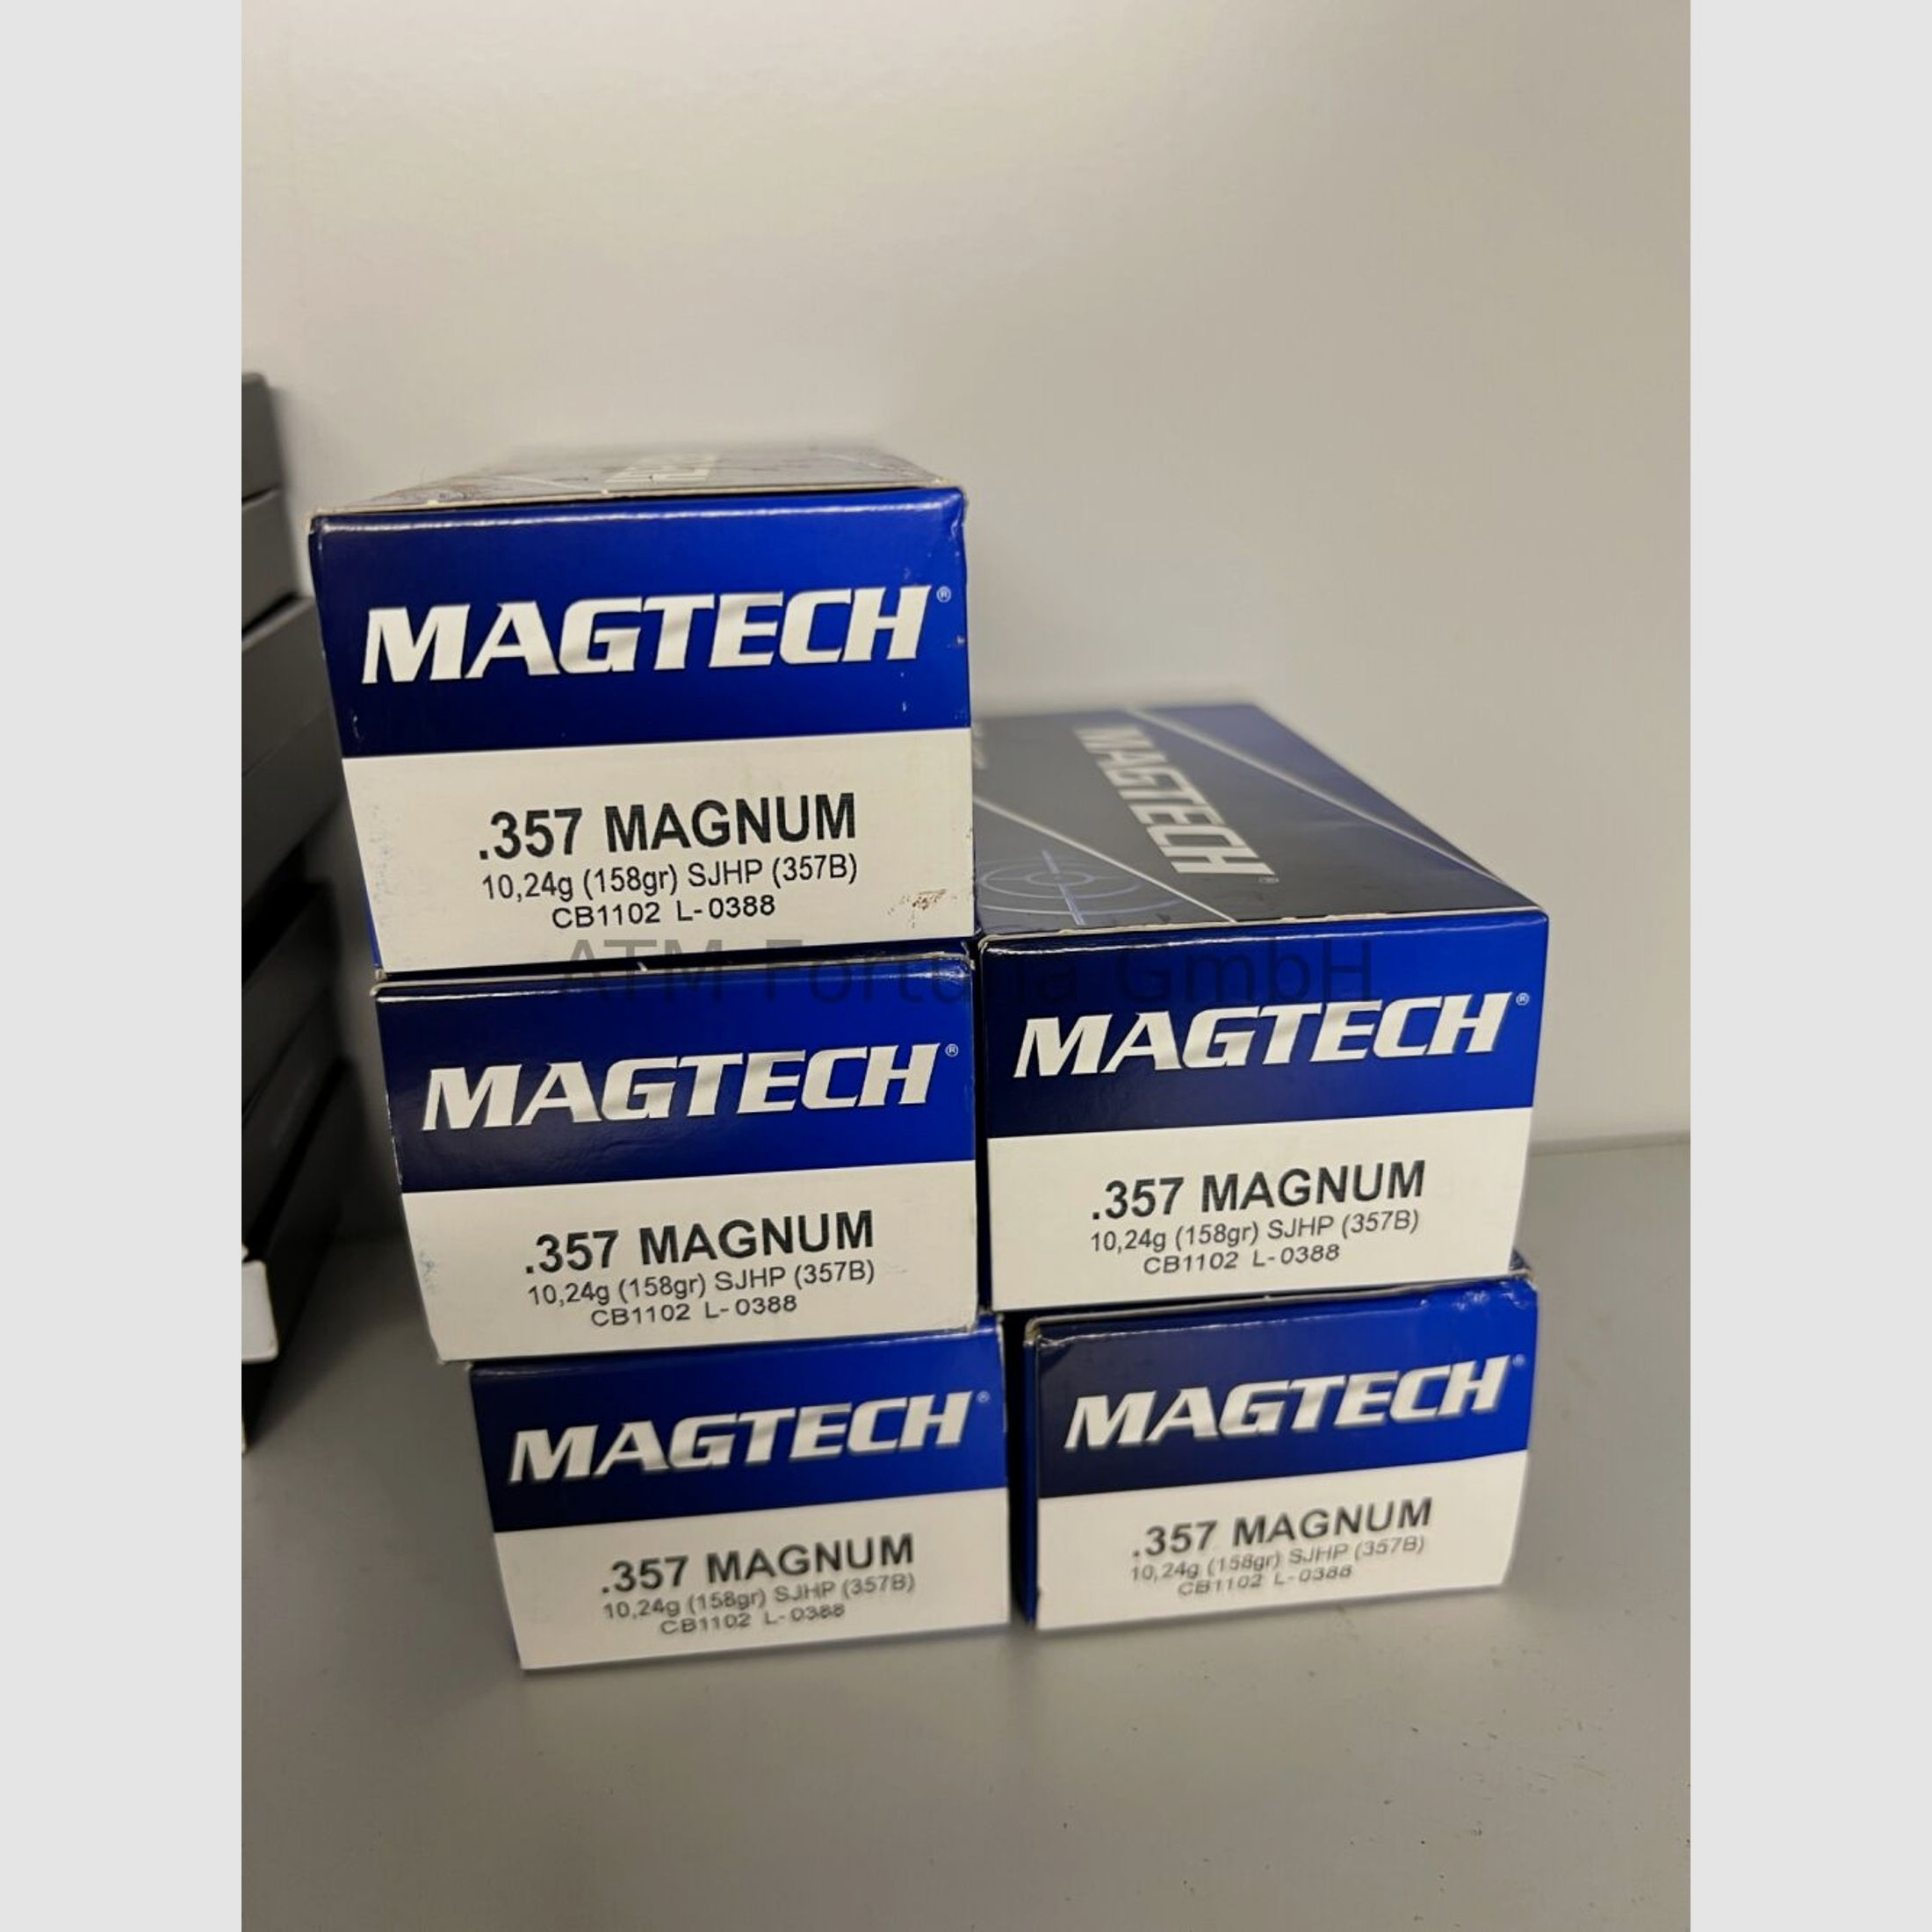 Magtech	 Standard .357 Mag SJHP 158 grs Revolverpatronen